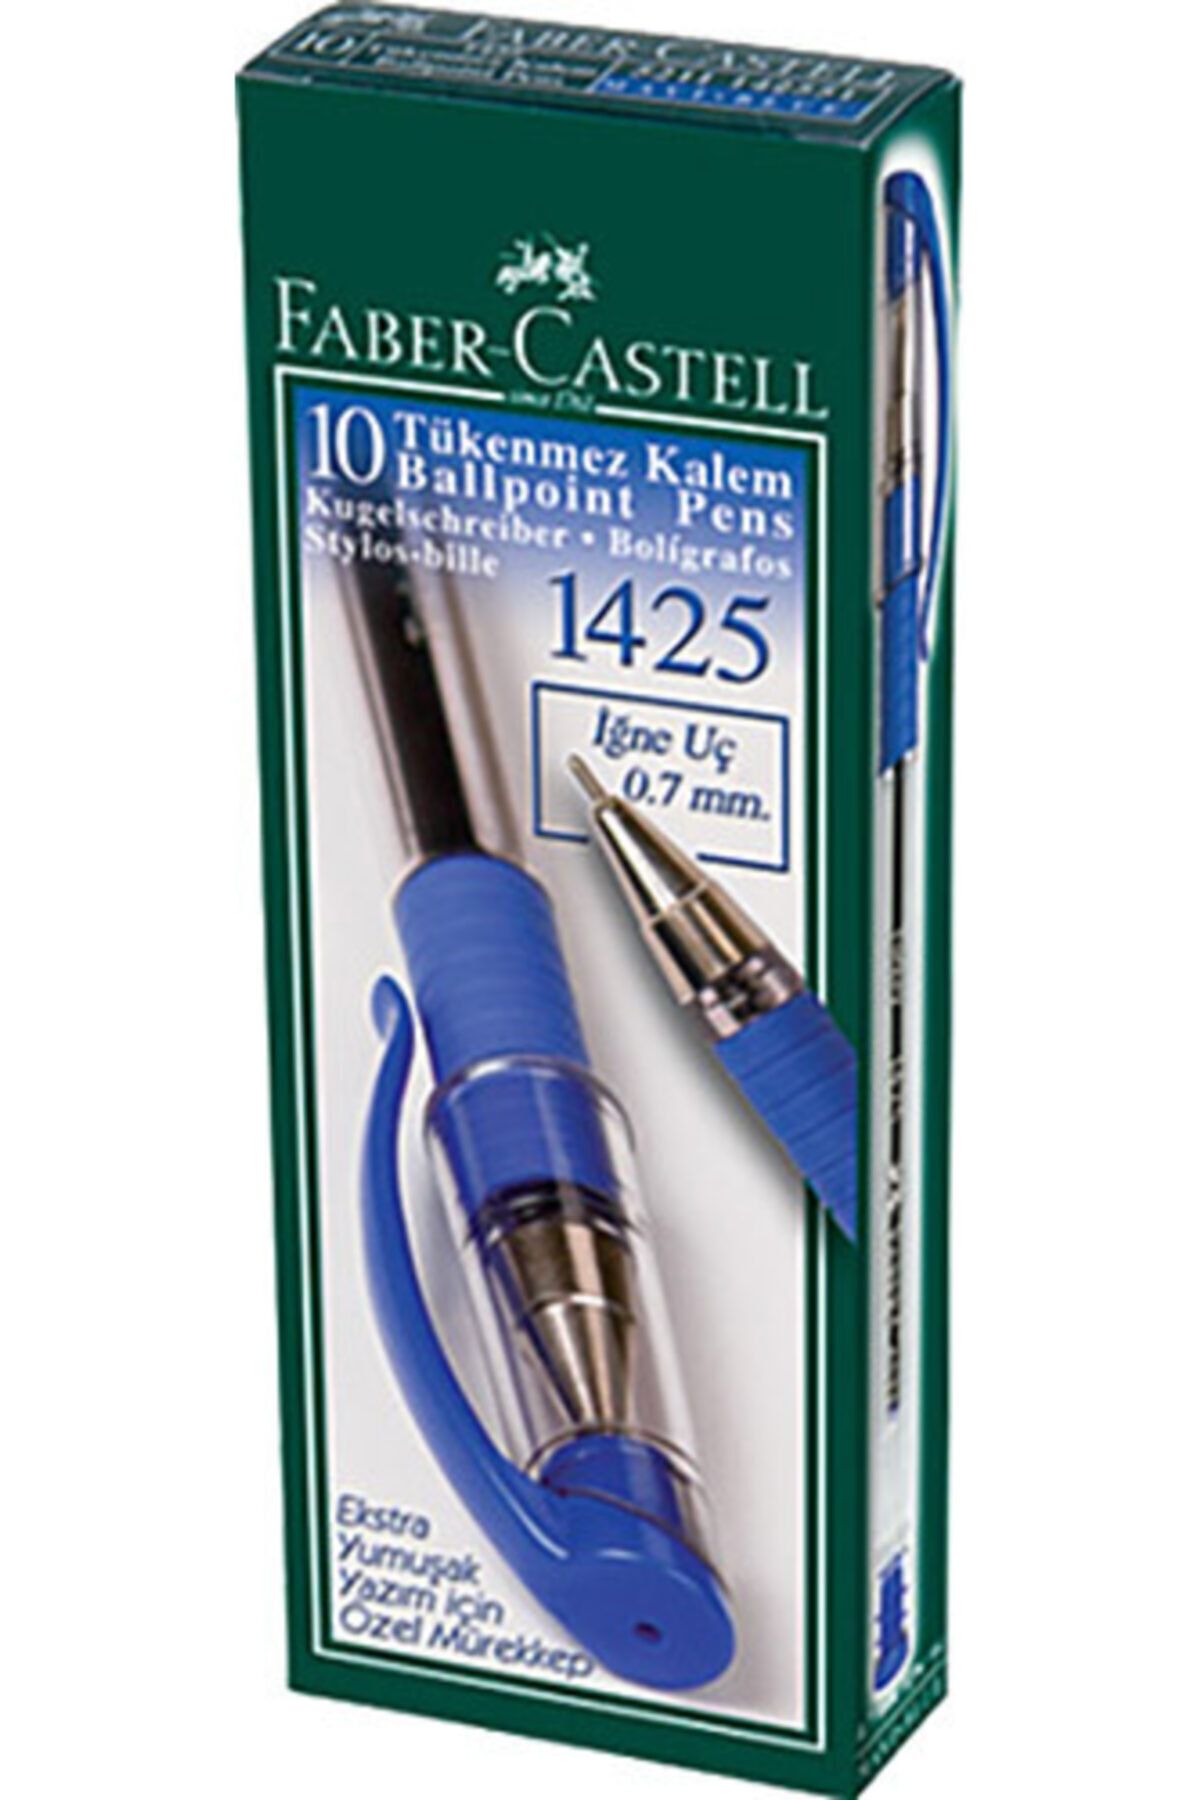 Faber Castell 10 Lu Paket Mavi 1425 Iğne Uçlu Tükenmez Kalem